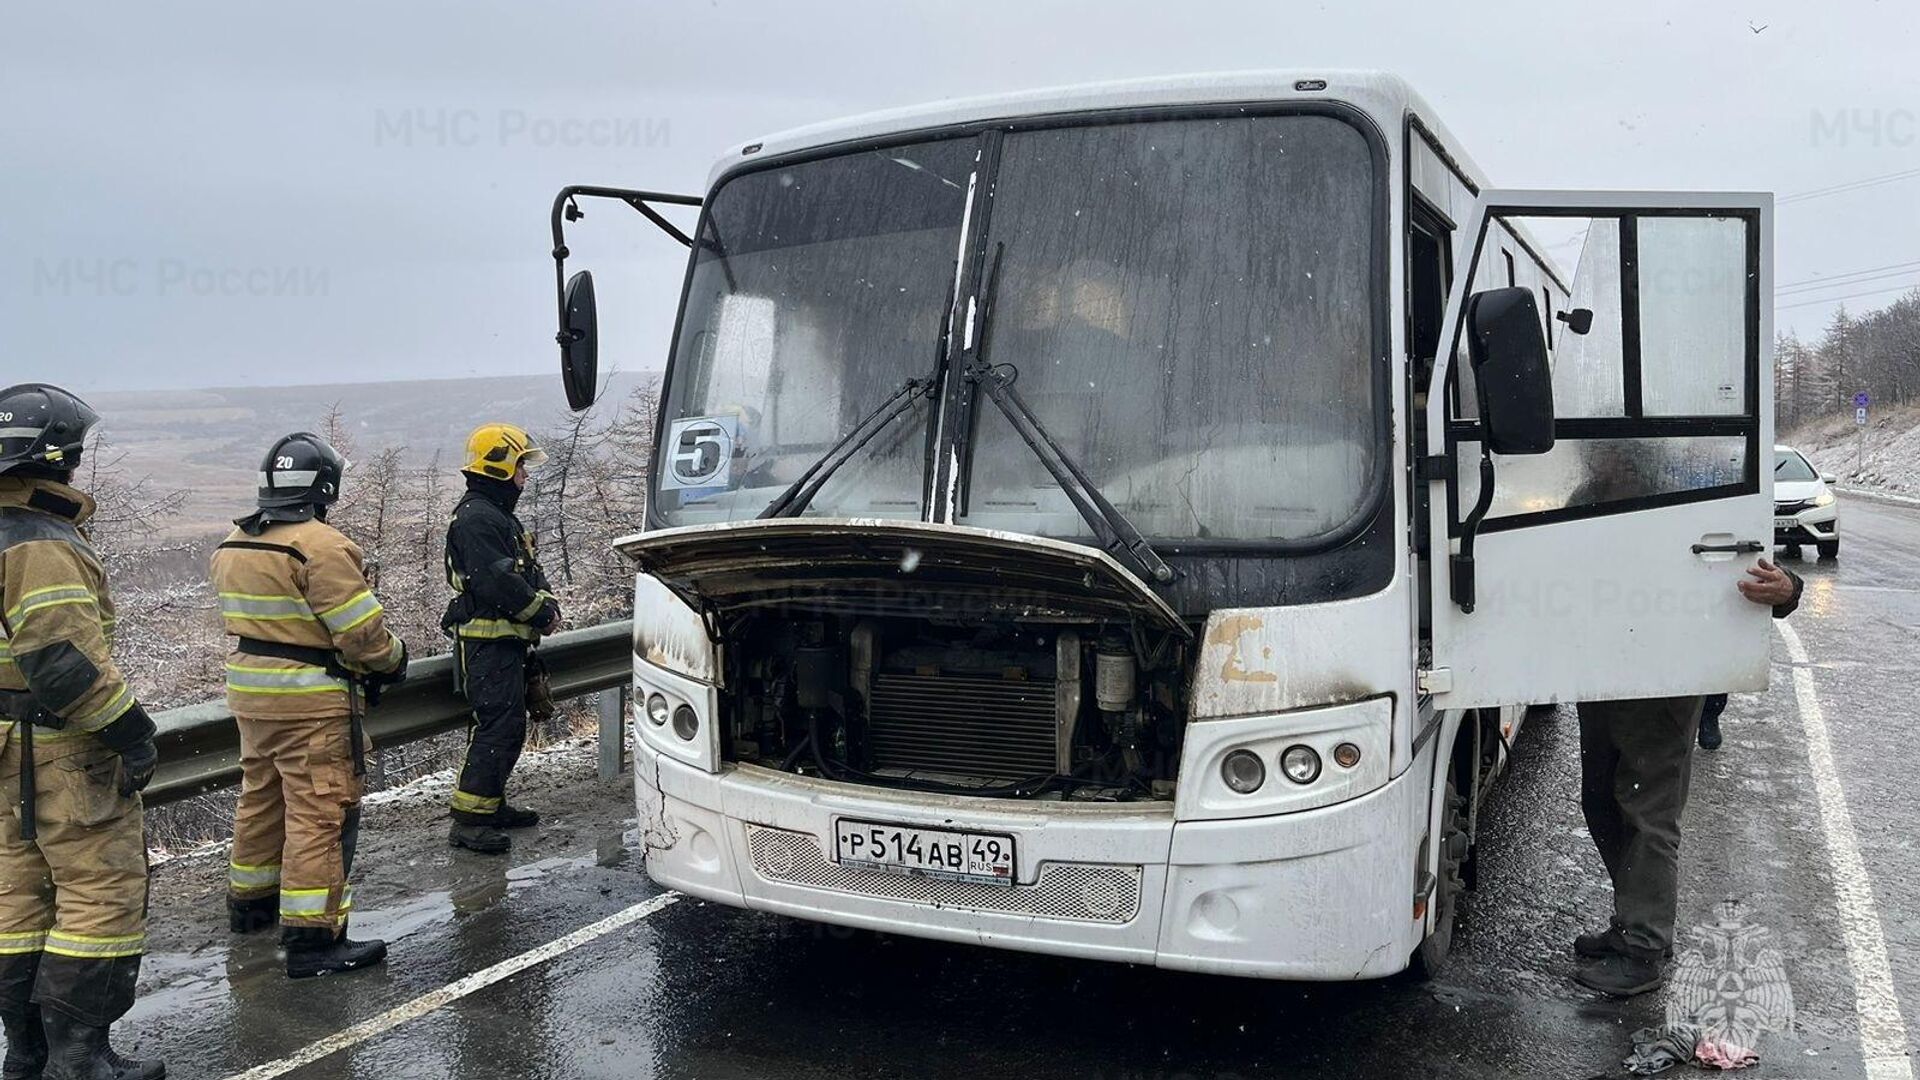 Рейсовый автобус, следовавший из пригорода в Магадан, в котором произошло возгорание. 9 октября 20231